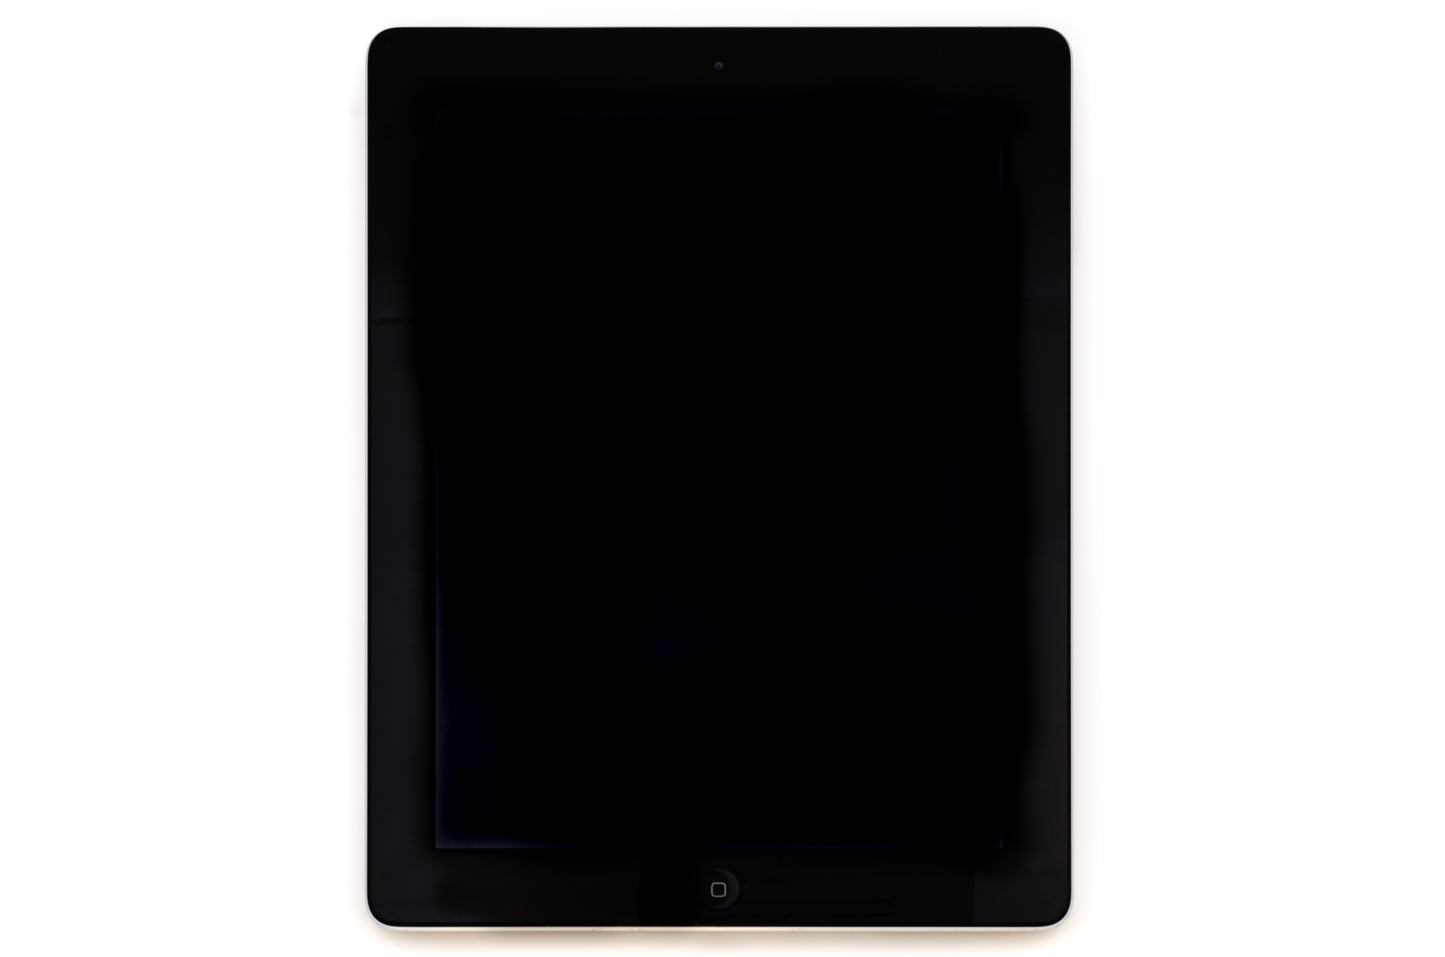 apple-2012-9.7-inch-ipad-4-a1459-silver/black-2